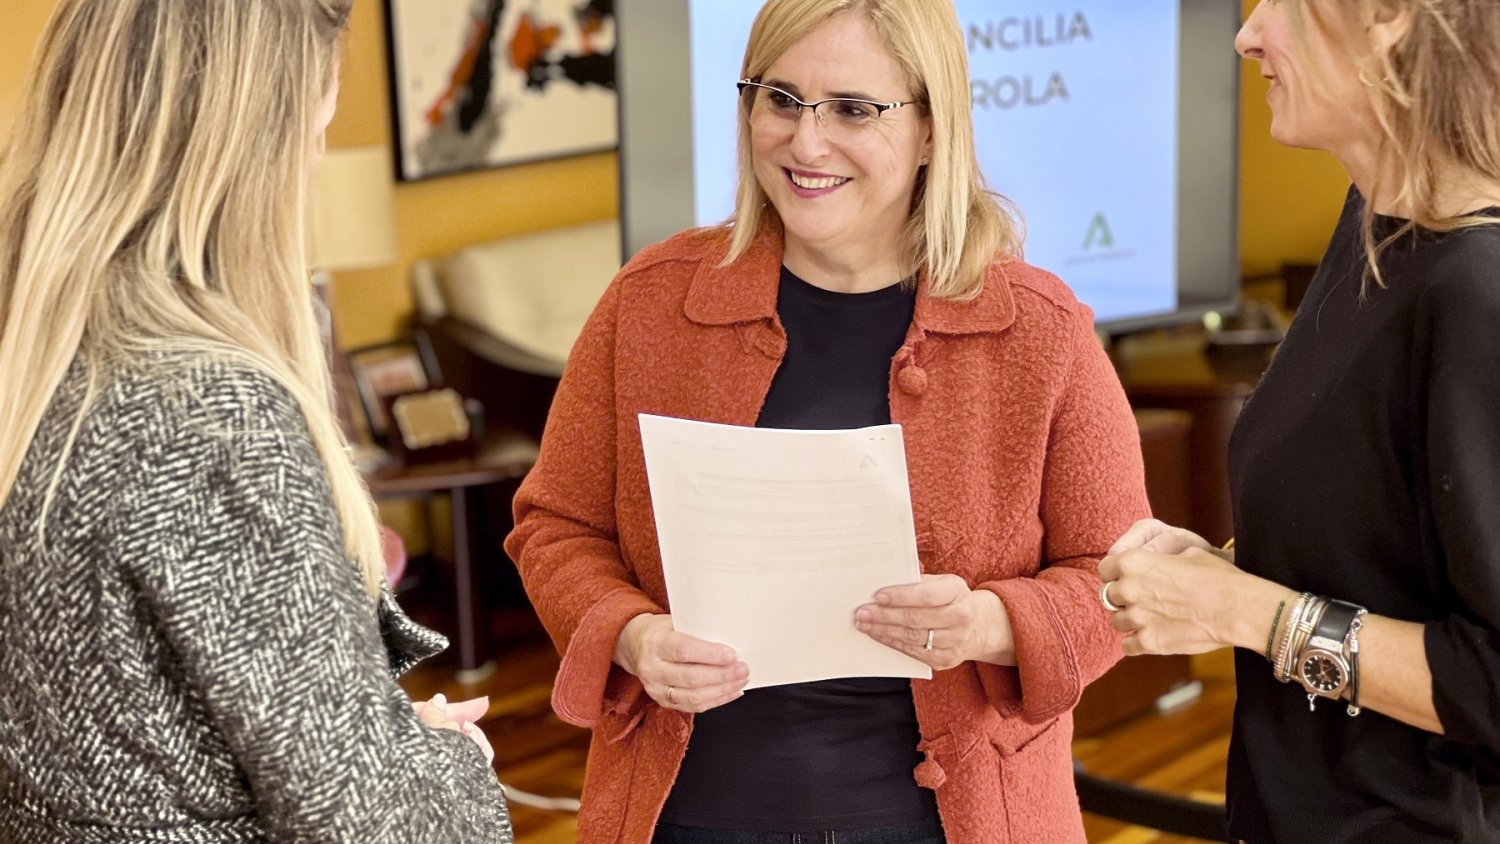 Fuengirola facilitará la conciliación de 32 familias monoparentales gracias al Plan Corresponsables